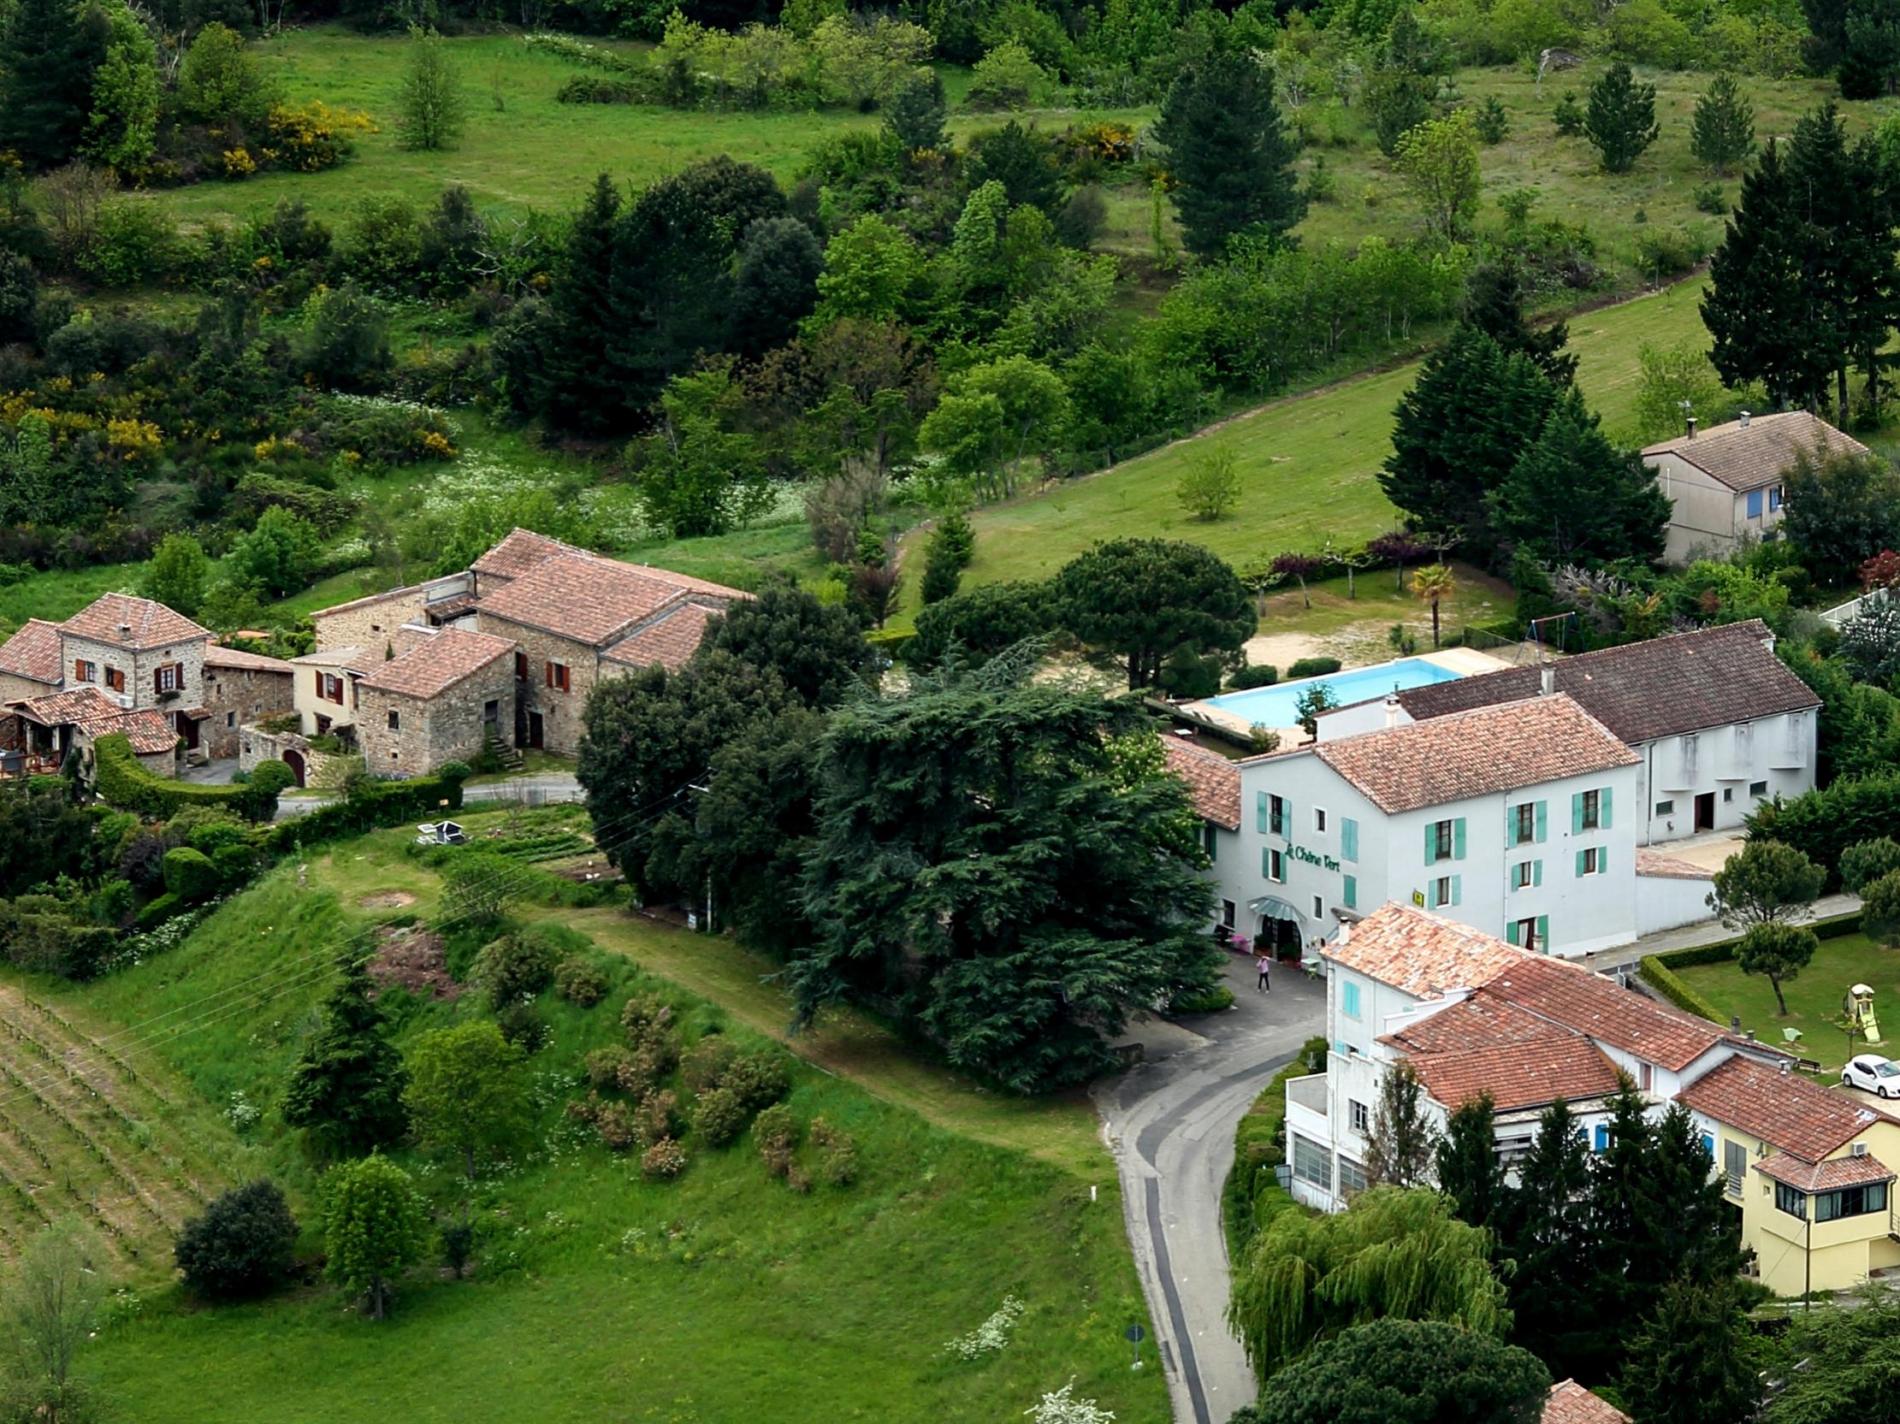 Logis Hotel au cœur de l’Ardèche méridionale